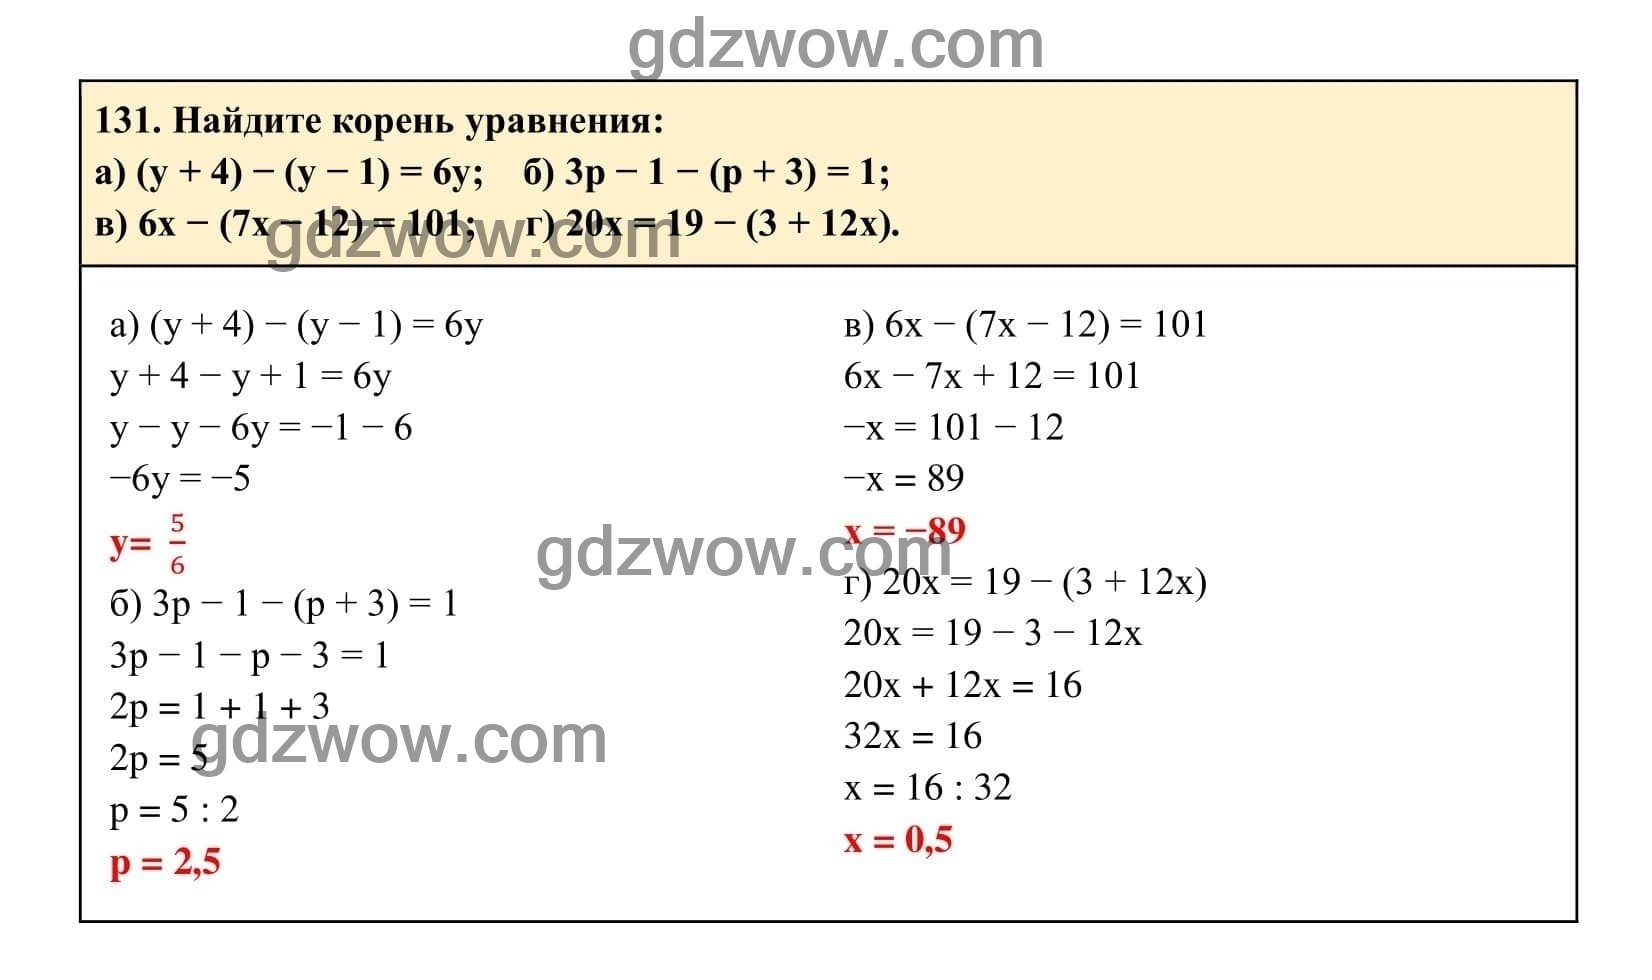 Упражнение 131 - ГДЗ по Алгебре 7 класс Учебник Макарычев (решебник) - GDZwow